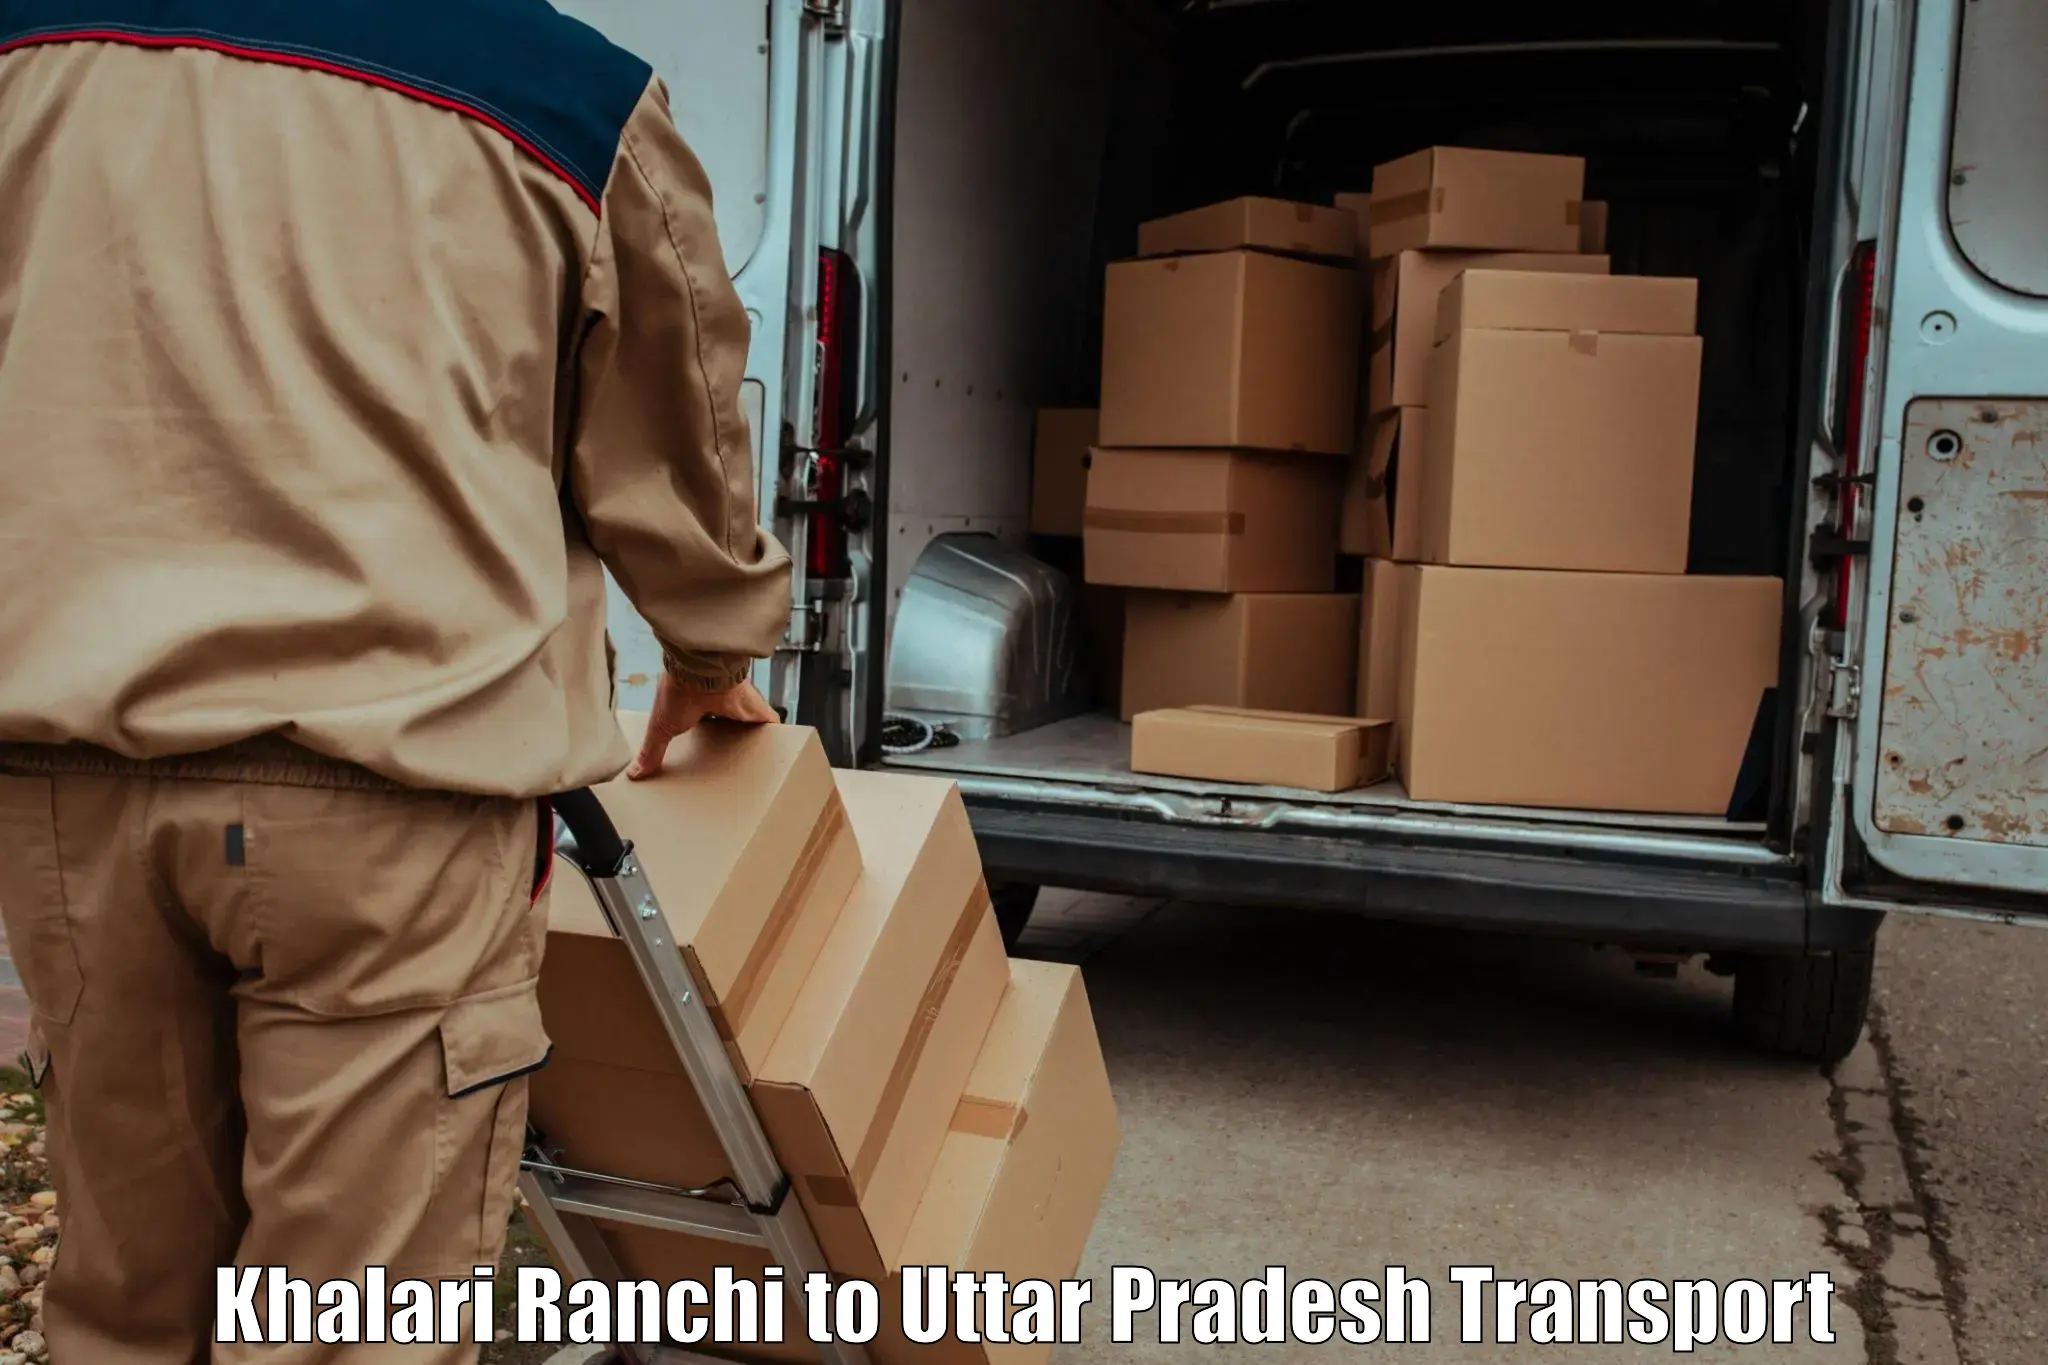 Truck transport companies in India Khalari Ranchi to Bhinga